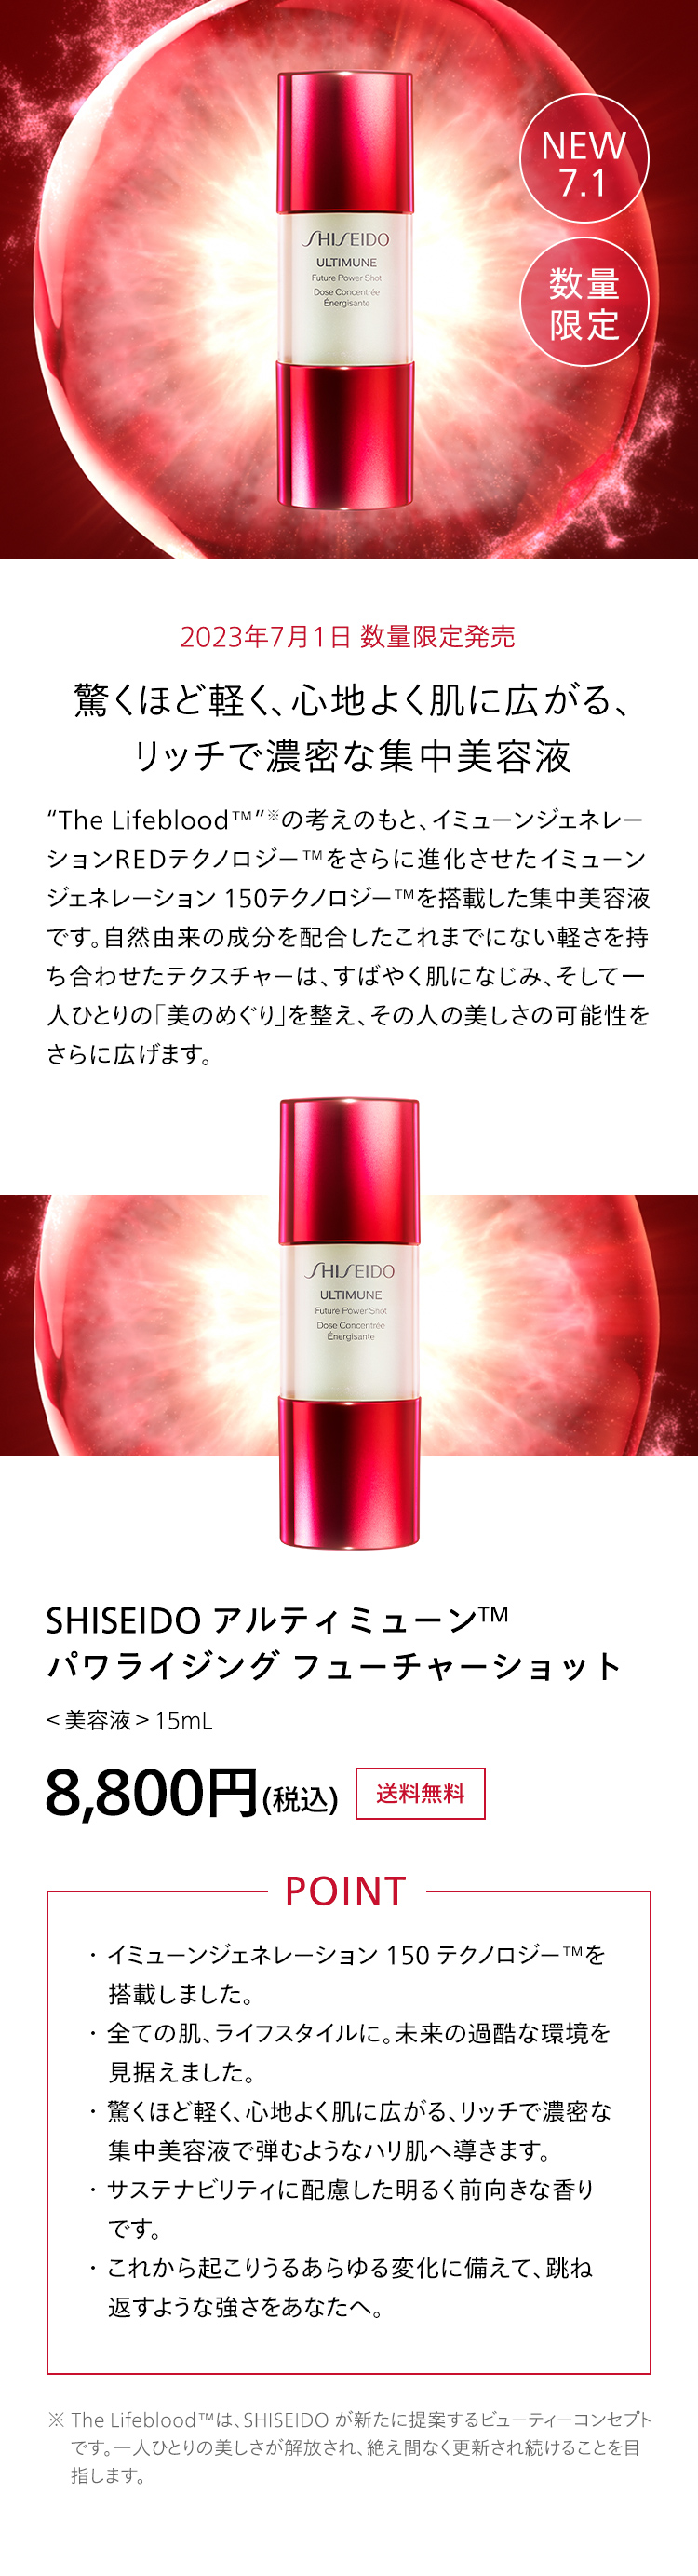 驚くほど軽く、心地よく肌に広がる、リッチで濃密な集中美容液 SHISEIDO アルティミューン パワライジング フューチャーショット